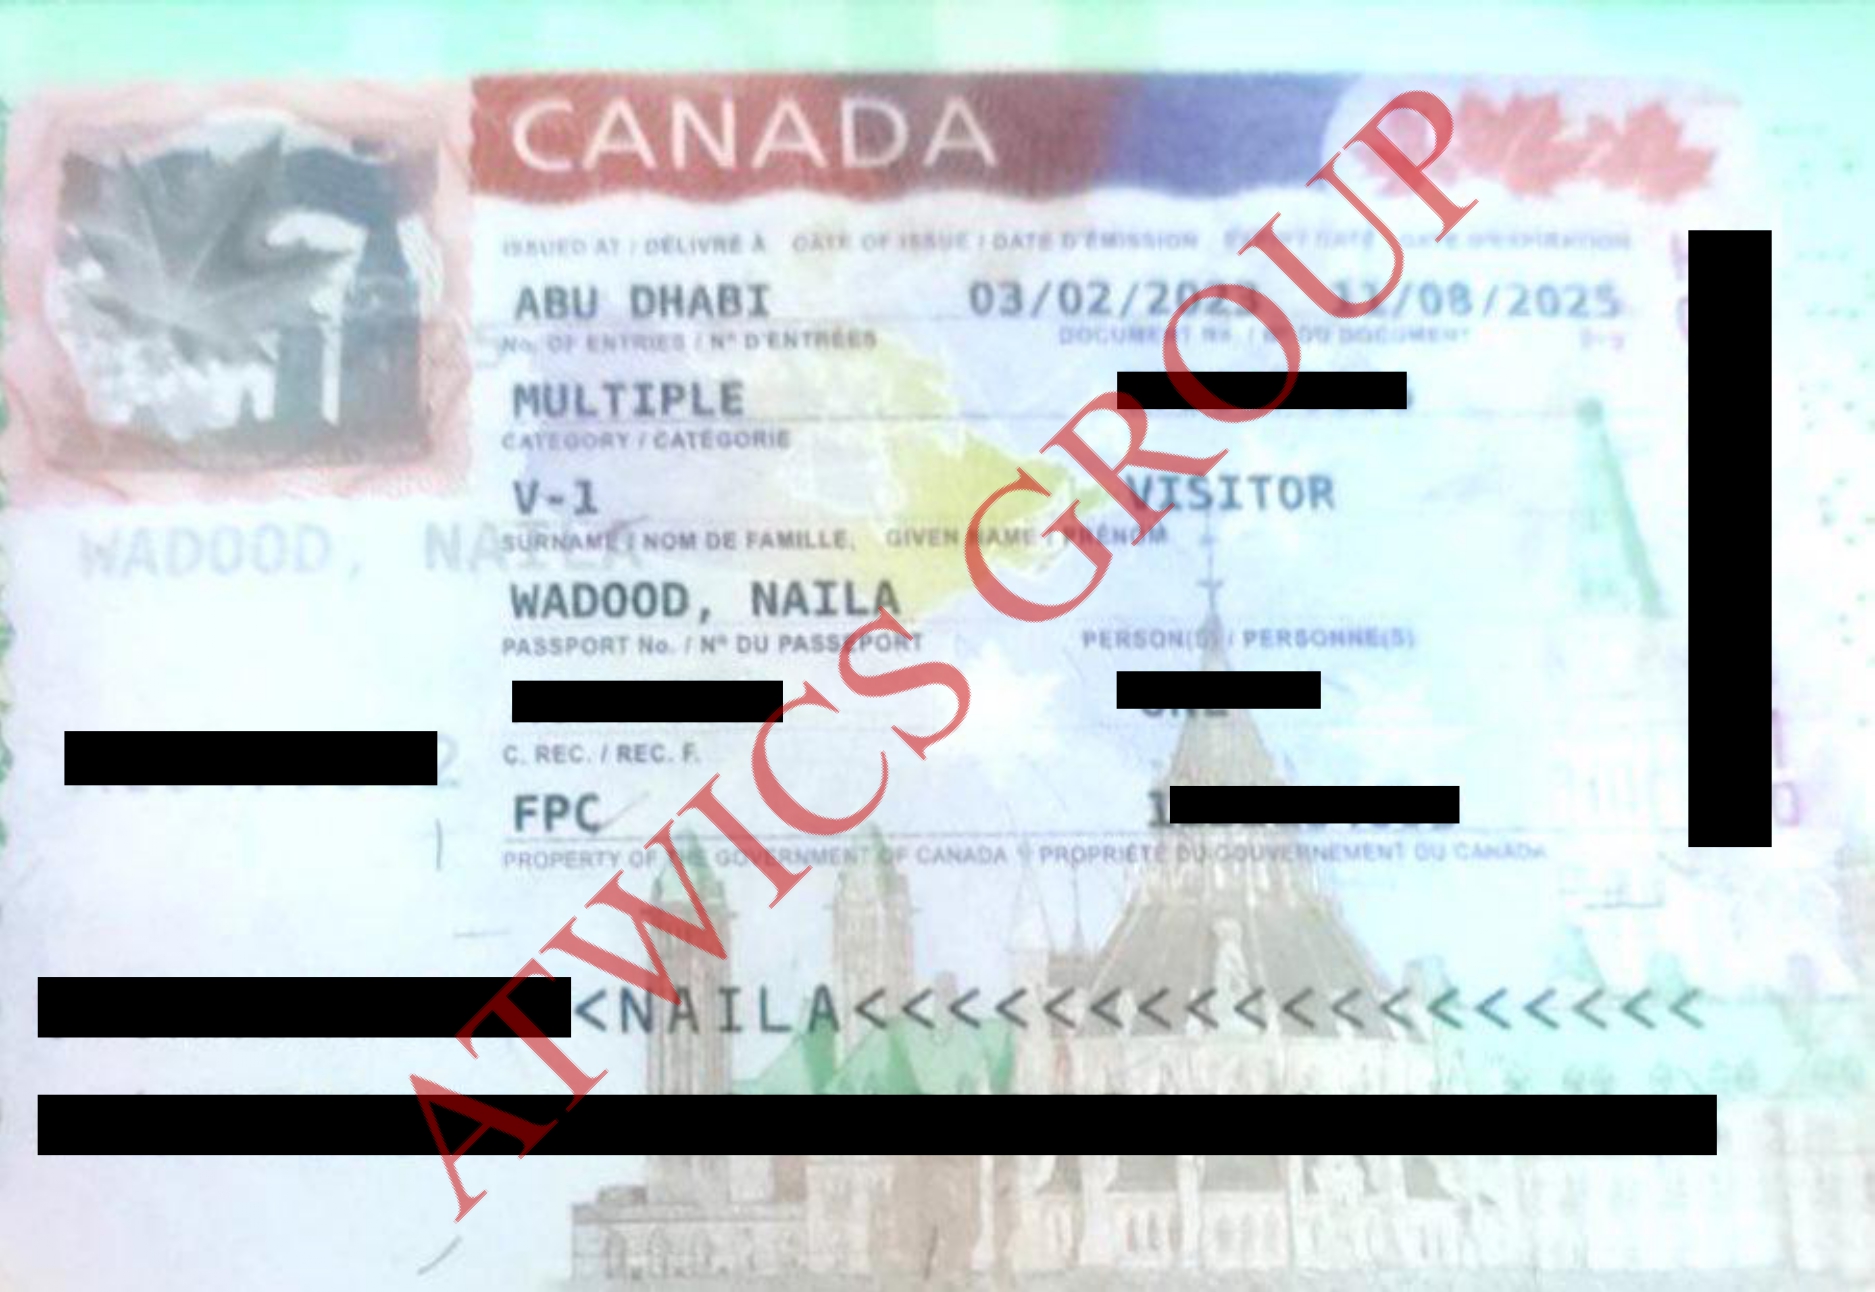 Naila Wadood (Visa)